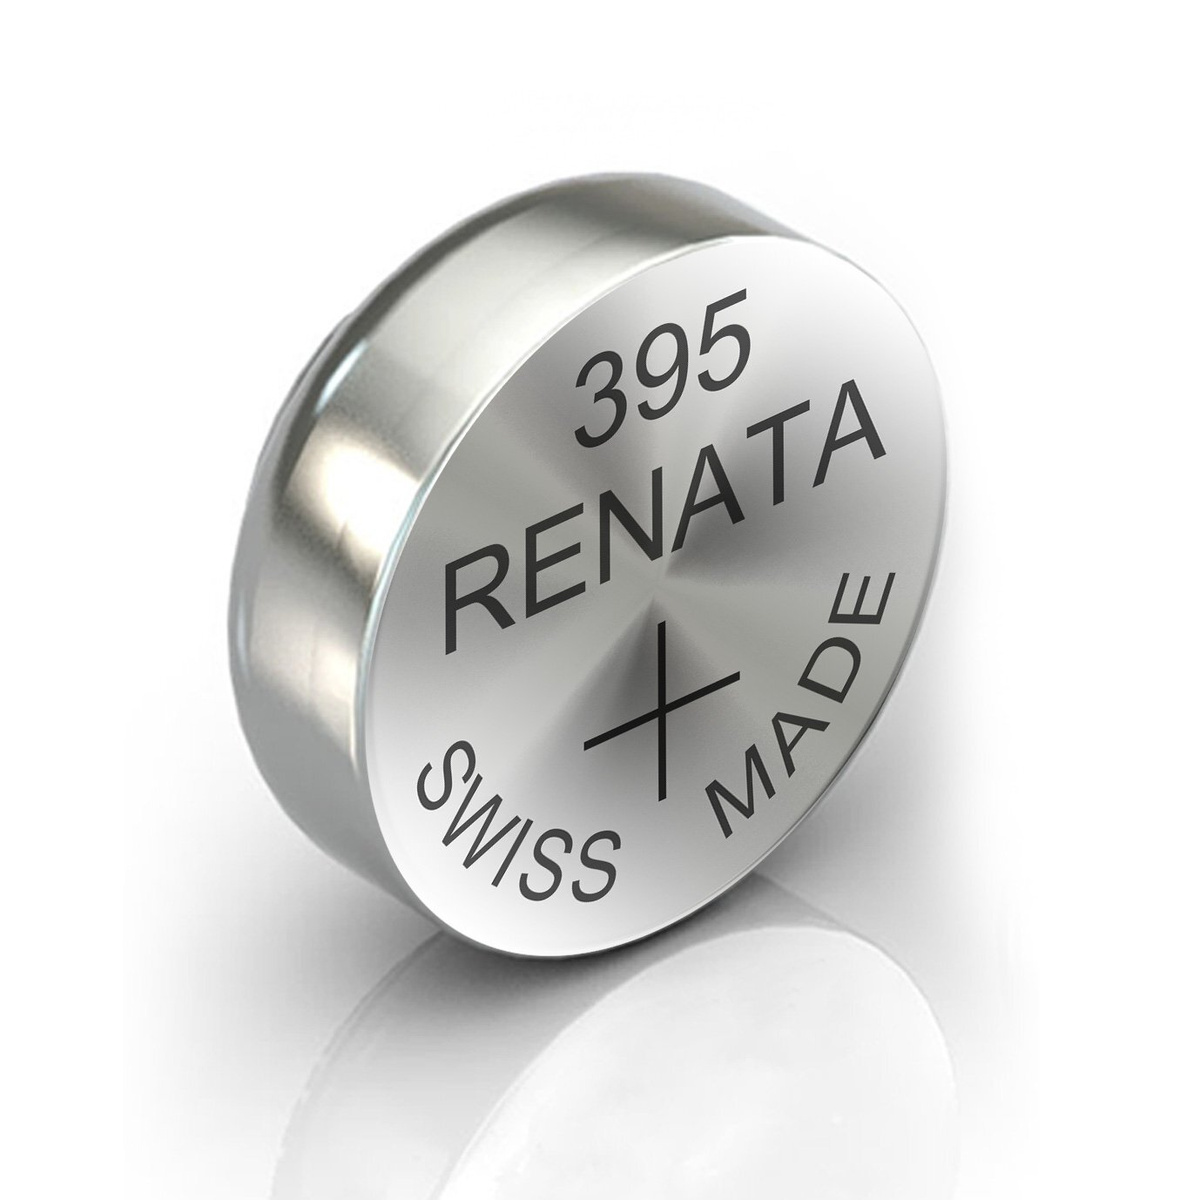 Renata 395